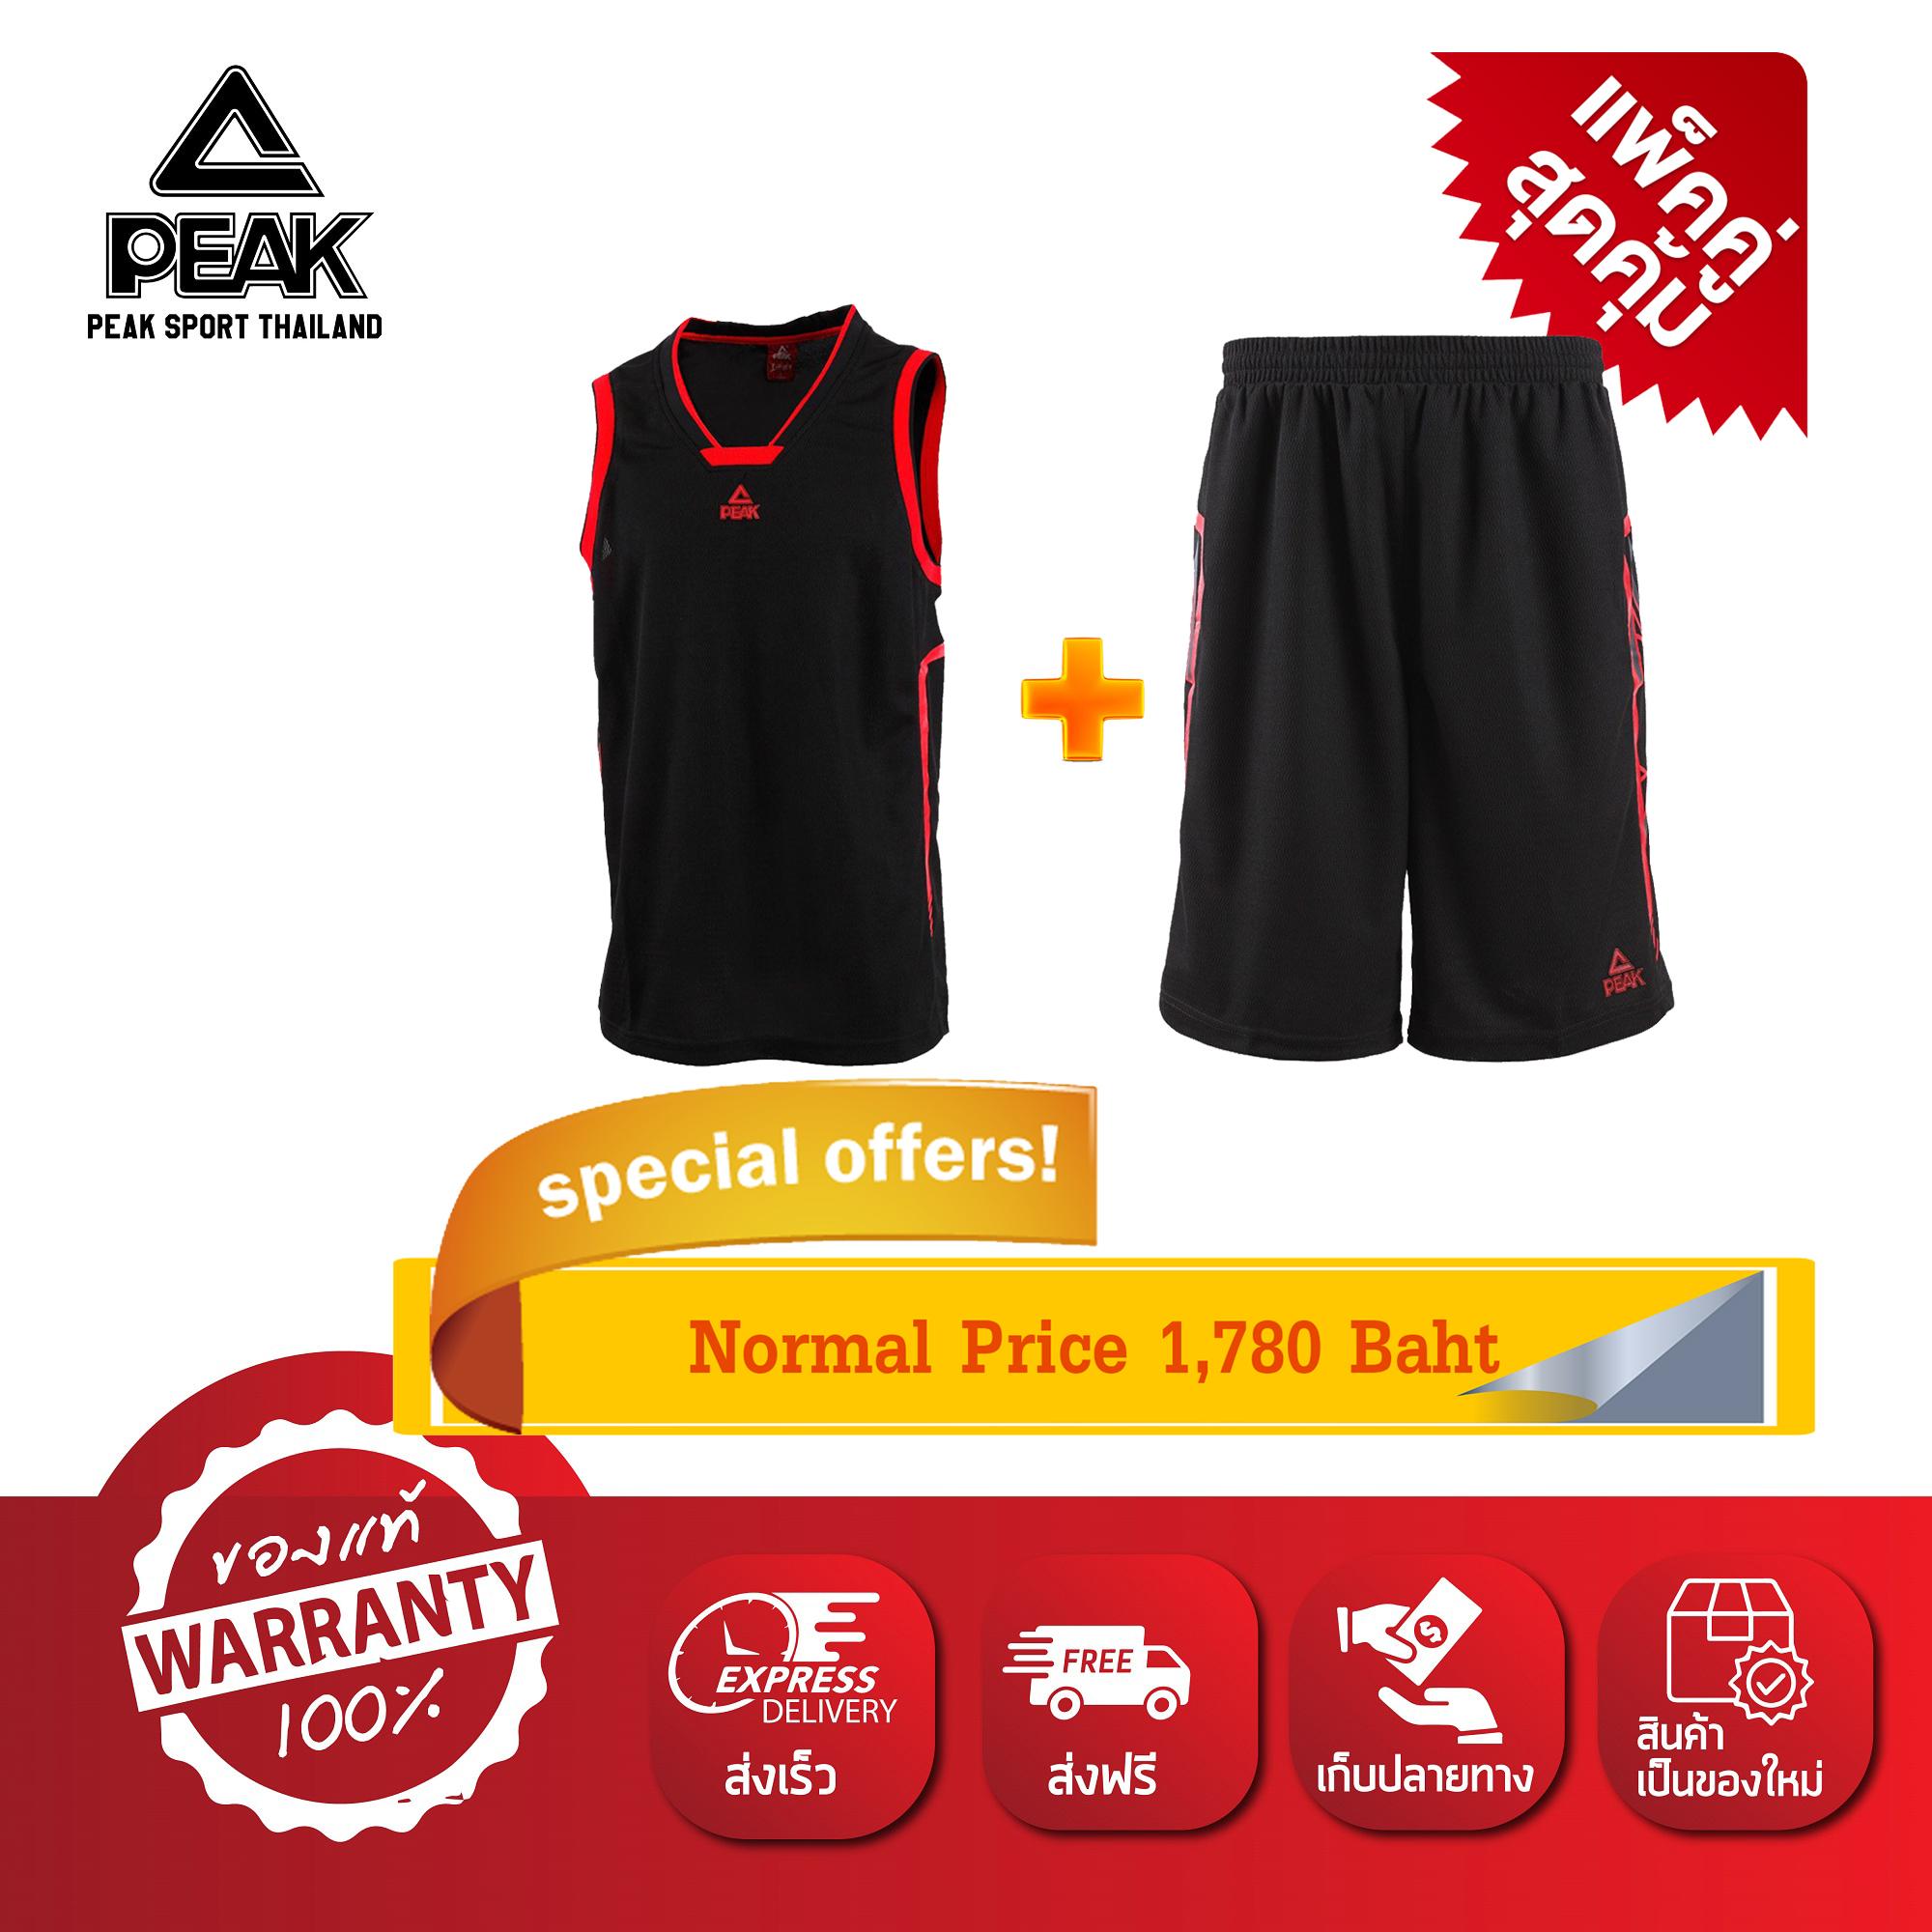 PEAK เสื้อ ผ้า กีฬา บาสเกตบอล Basketball Sport Jersey พีค รุ่น F7131081 แพ็คคู่ เสื้อ+กางเกง สีดำ